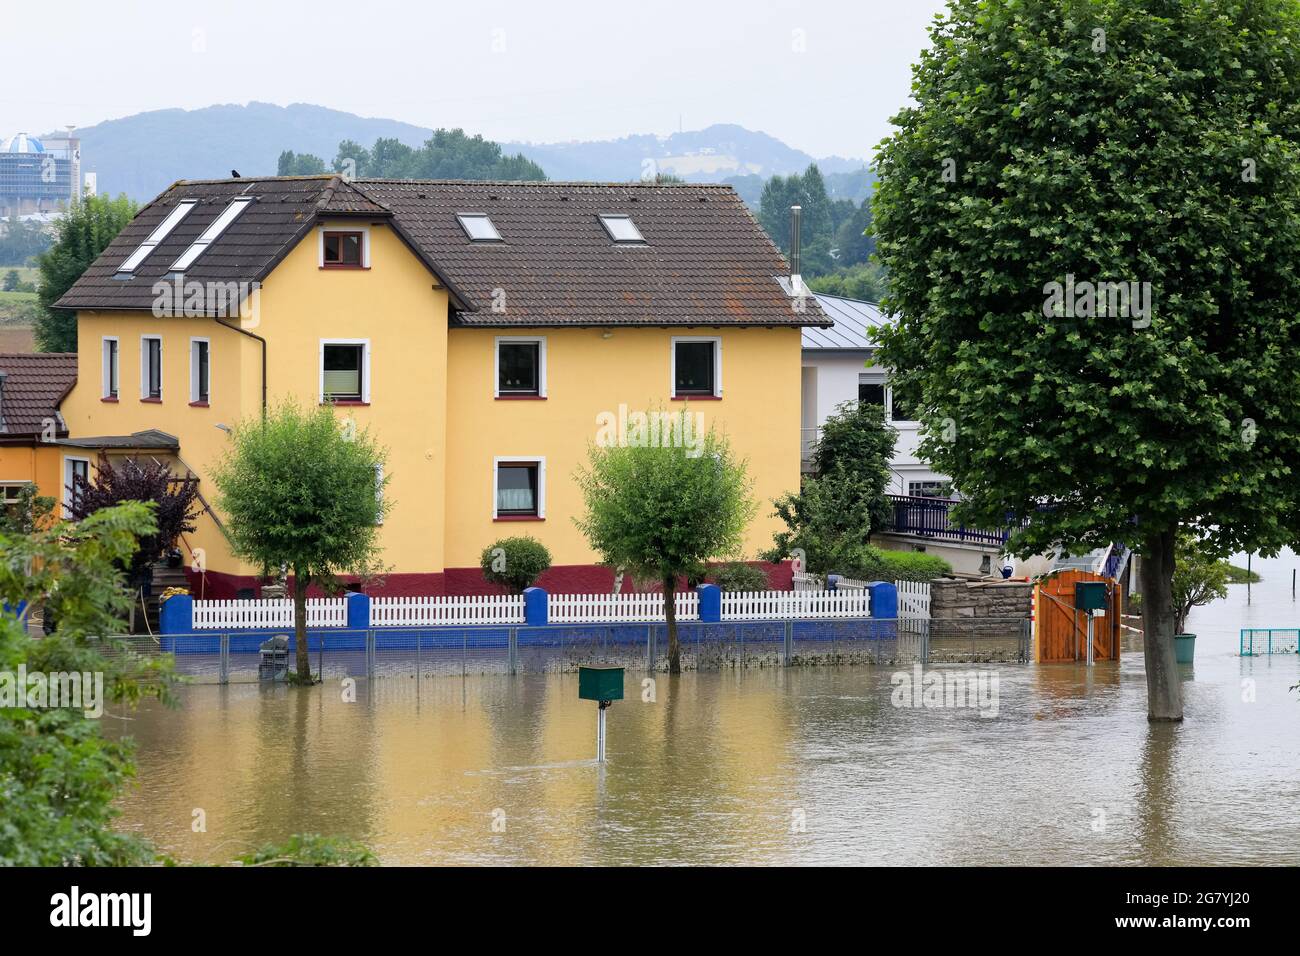 Hattingen, NRW, Allemagne. 16 juillet 2021. Une propriété au bord de la rivière est entourée d'eau. La Ruhr a inondé son remblai, ses champs et de nombreux jardins, sous-sols et propriétés près de la ville de Hattingen dans le district de la Ruhr en Rhénanie-du-Nord-Westphalie. Le NRW a été frappé par de terribles inondations, suite à de fortes pluies au cours des derniers jours. Plus de 80 000 personnes sont mortes jusqu'à présent lors des inondations en Allemagne. Credit: Imagetraceur/Alamy Live News Banque D'Images